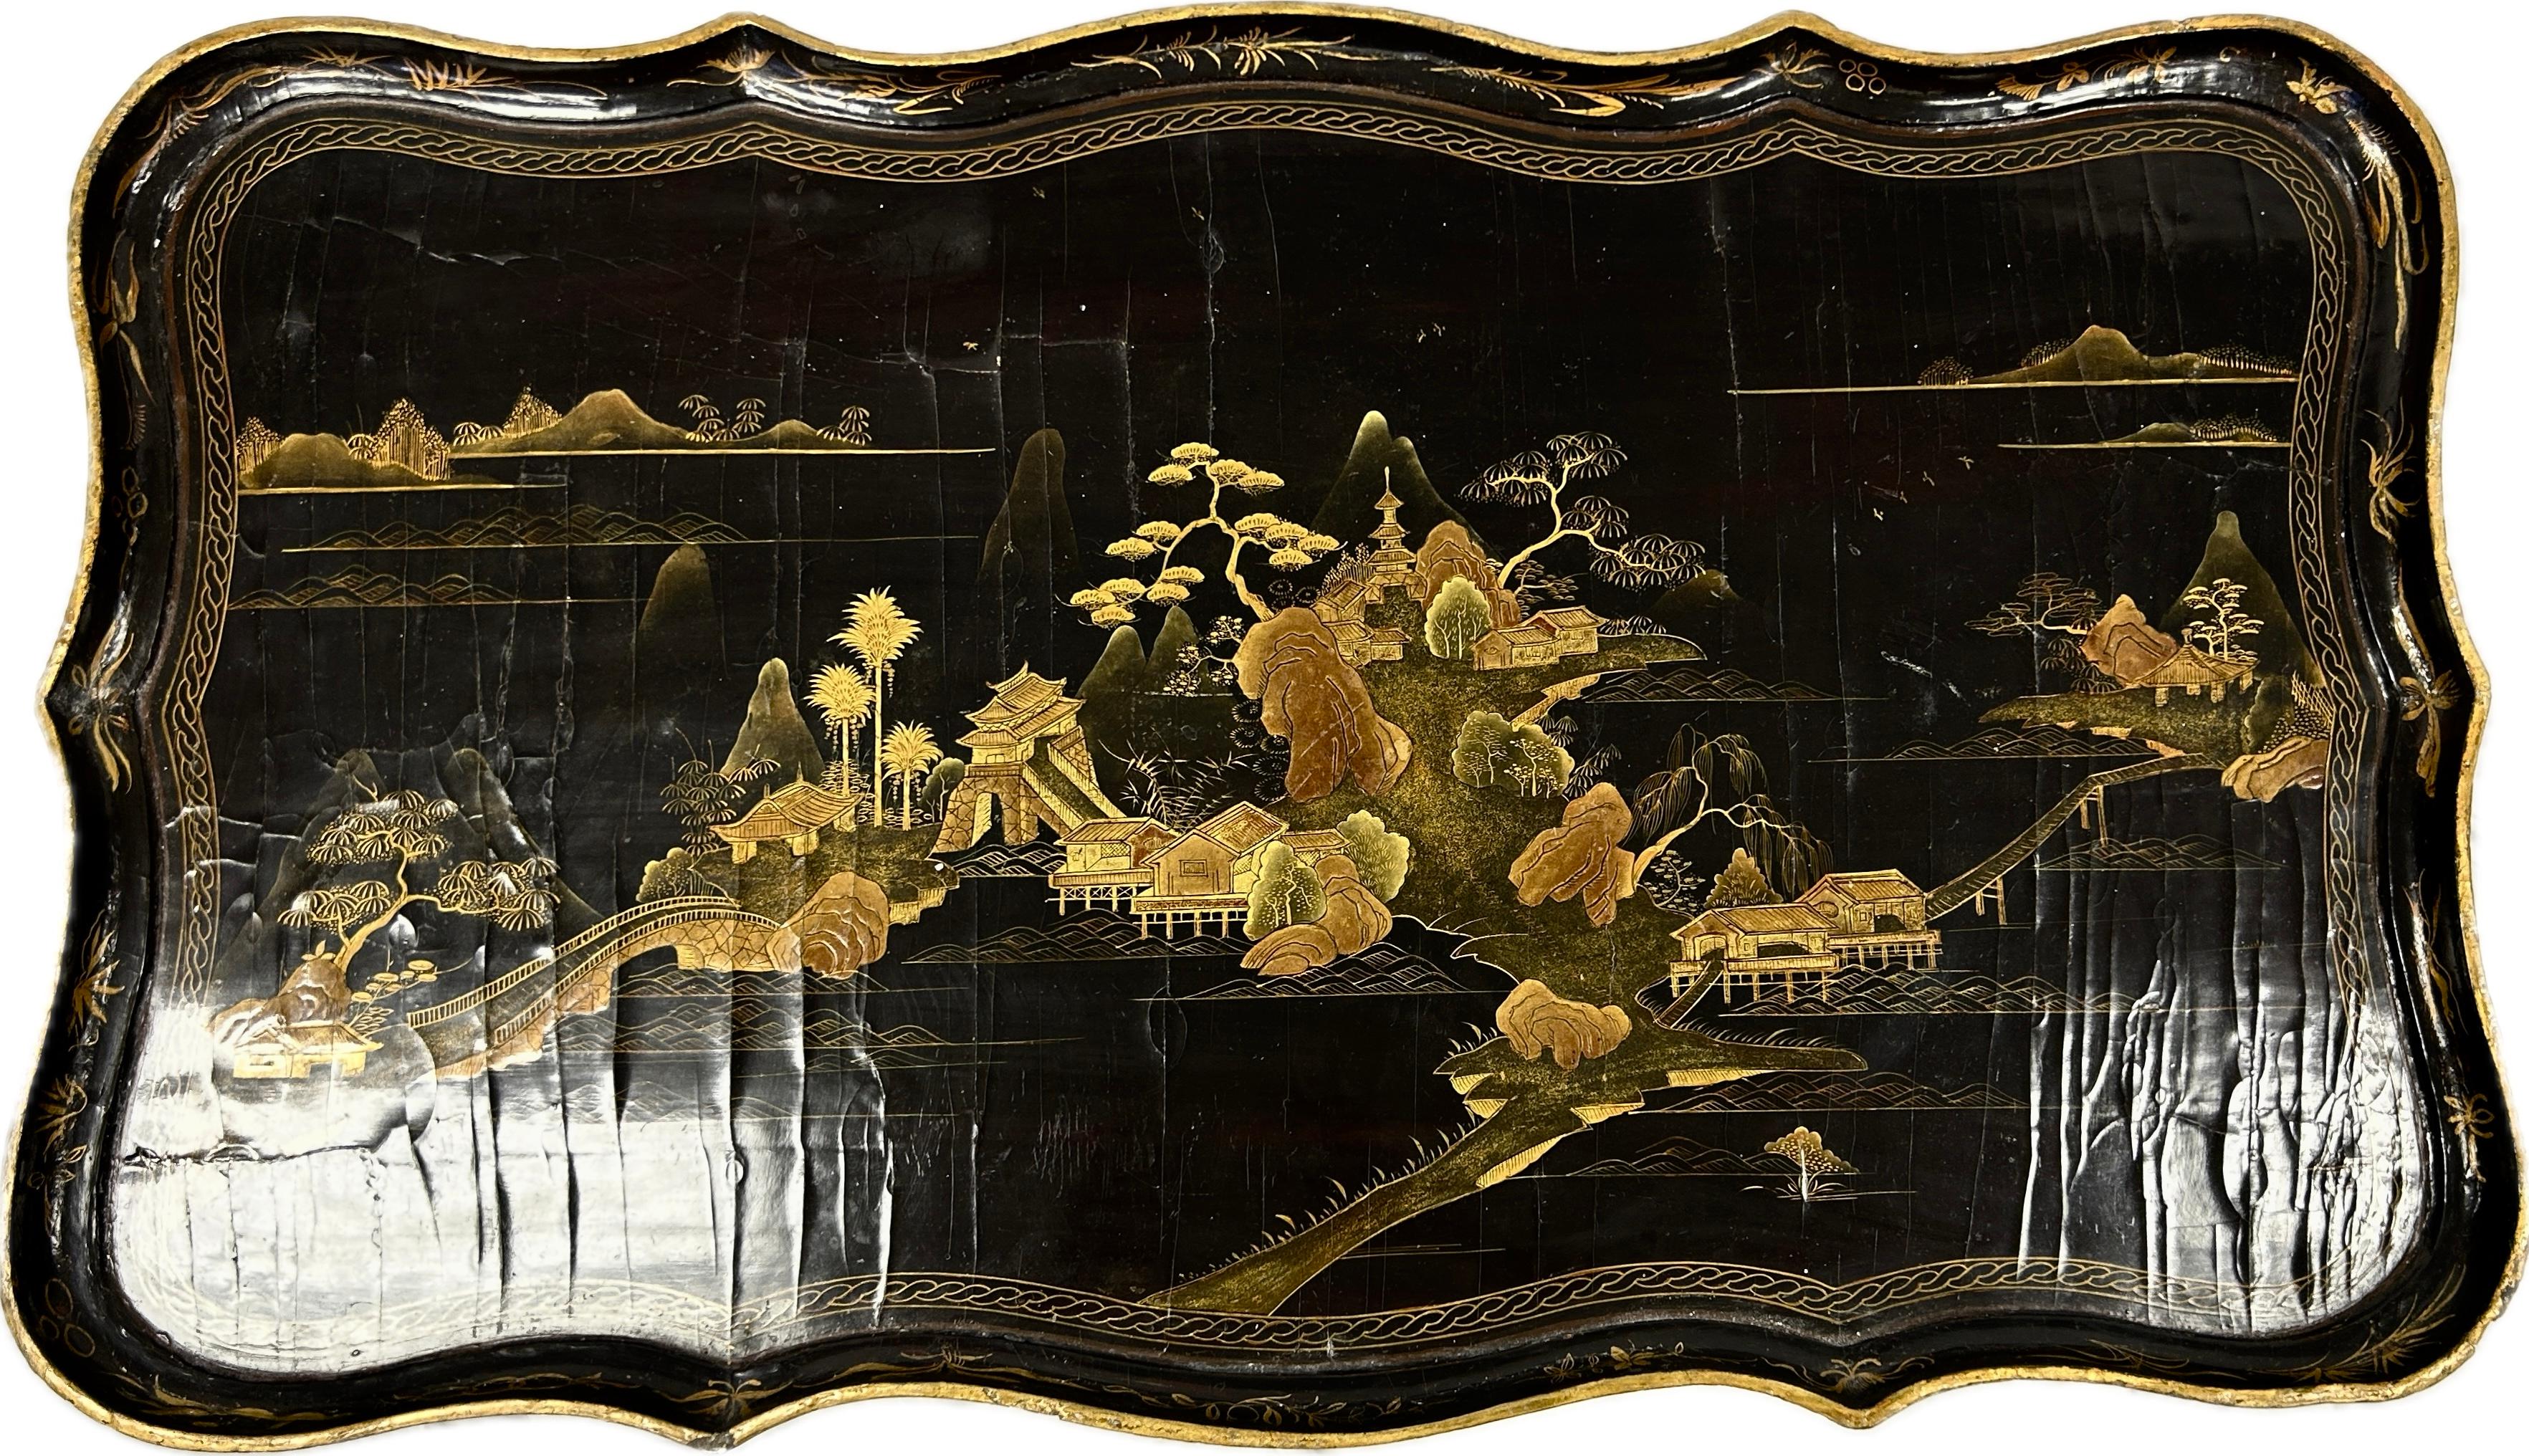 Englischer lackierter Chinoiserie-Tisch des 19. Jahrhunderts. Der Tisch hat eine Schublade. Handgemalte chinesische Landschaft in satten Farben von Gold, Moosgrün und Braun auf schwarzem Hintergrund. Die geschwungenen Beine sind aus schwarz